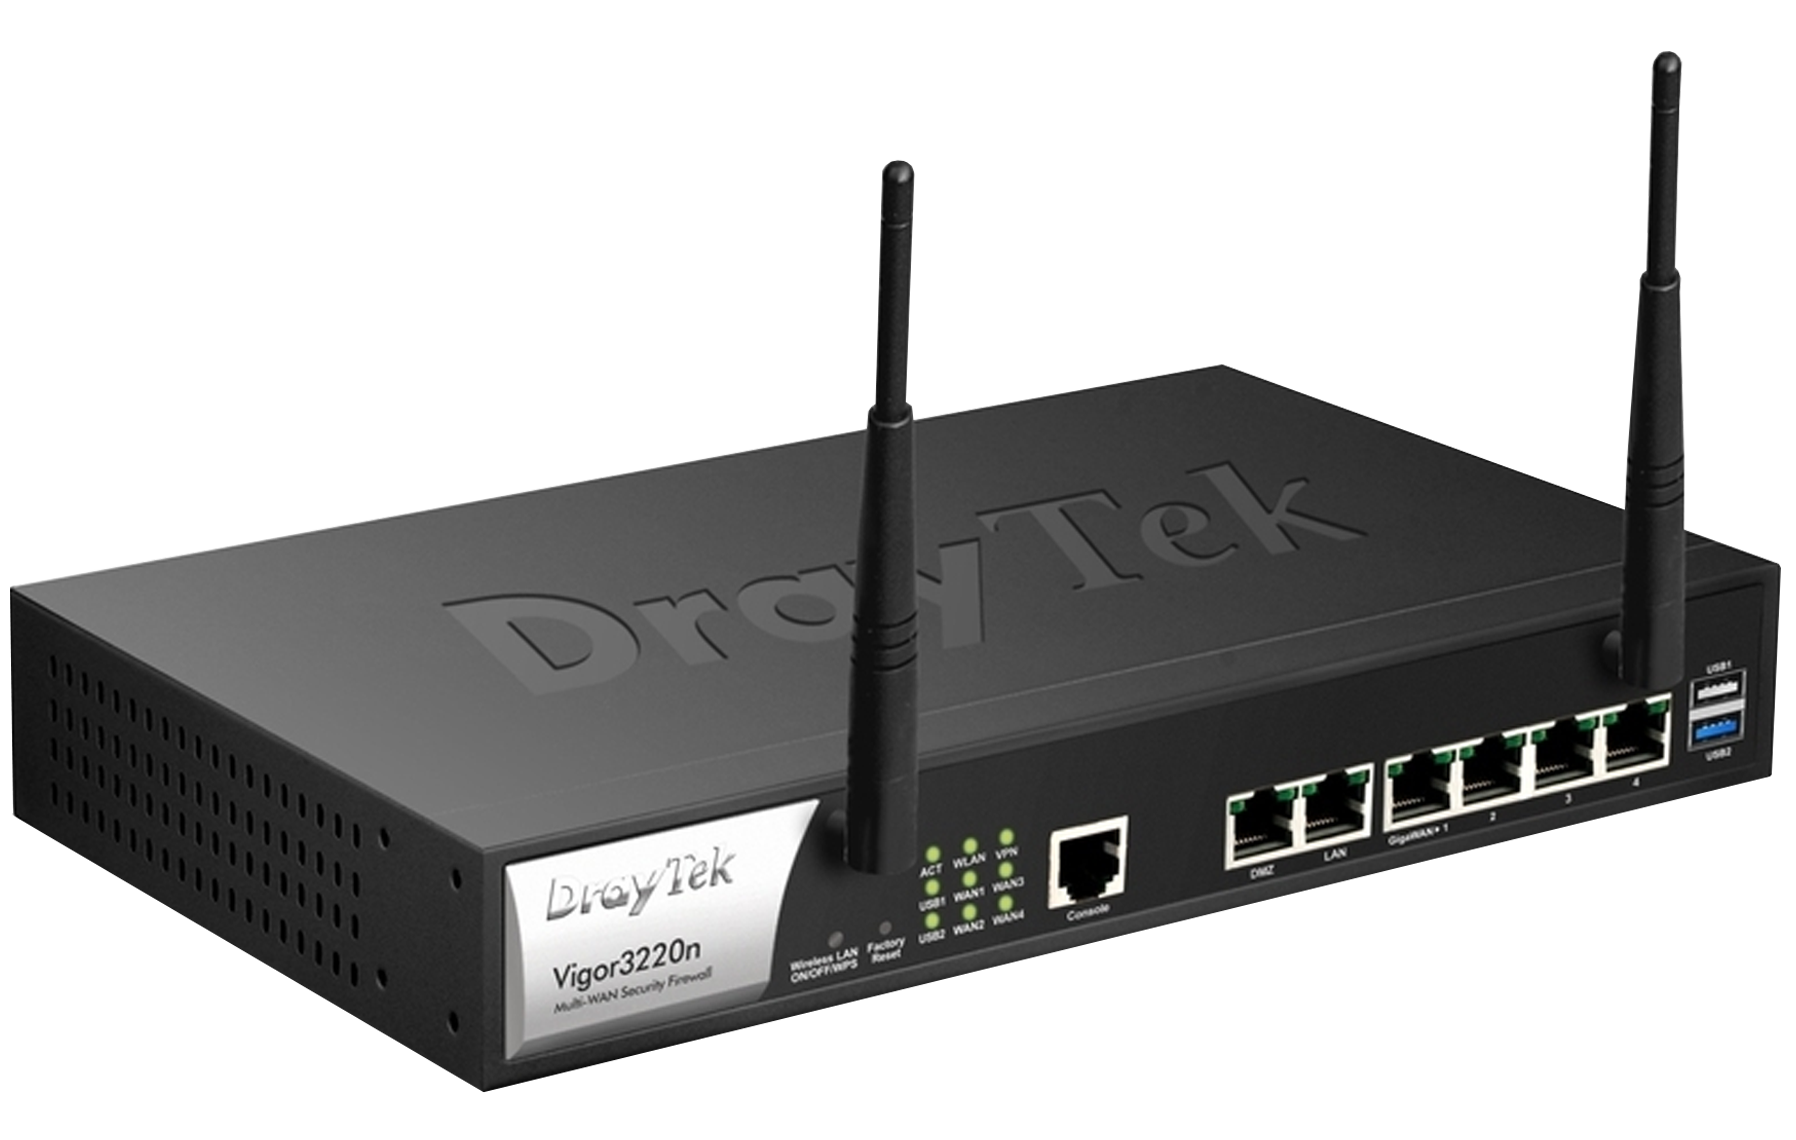 DRAYTEK VIGOR3220N- RUTEADOR INALAMBRICO 4 PUERTOS WAN/ 100 VPN/ FIREWALL/ USB/ 3G 4G/ PUERTOS GIGABIT